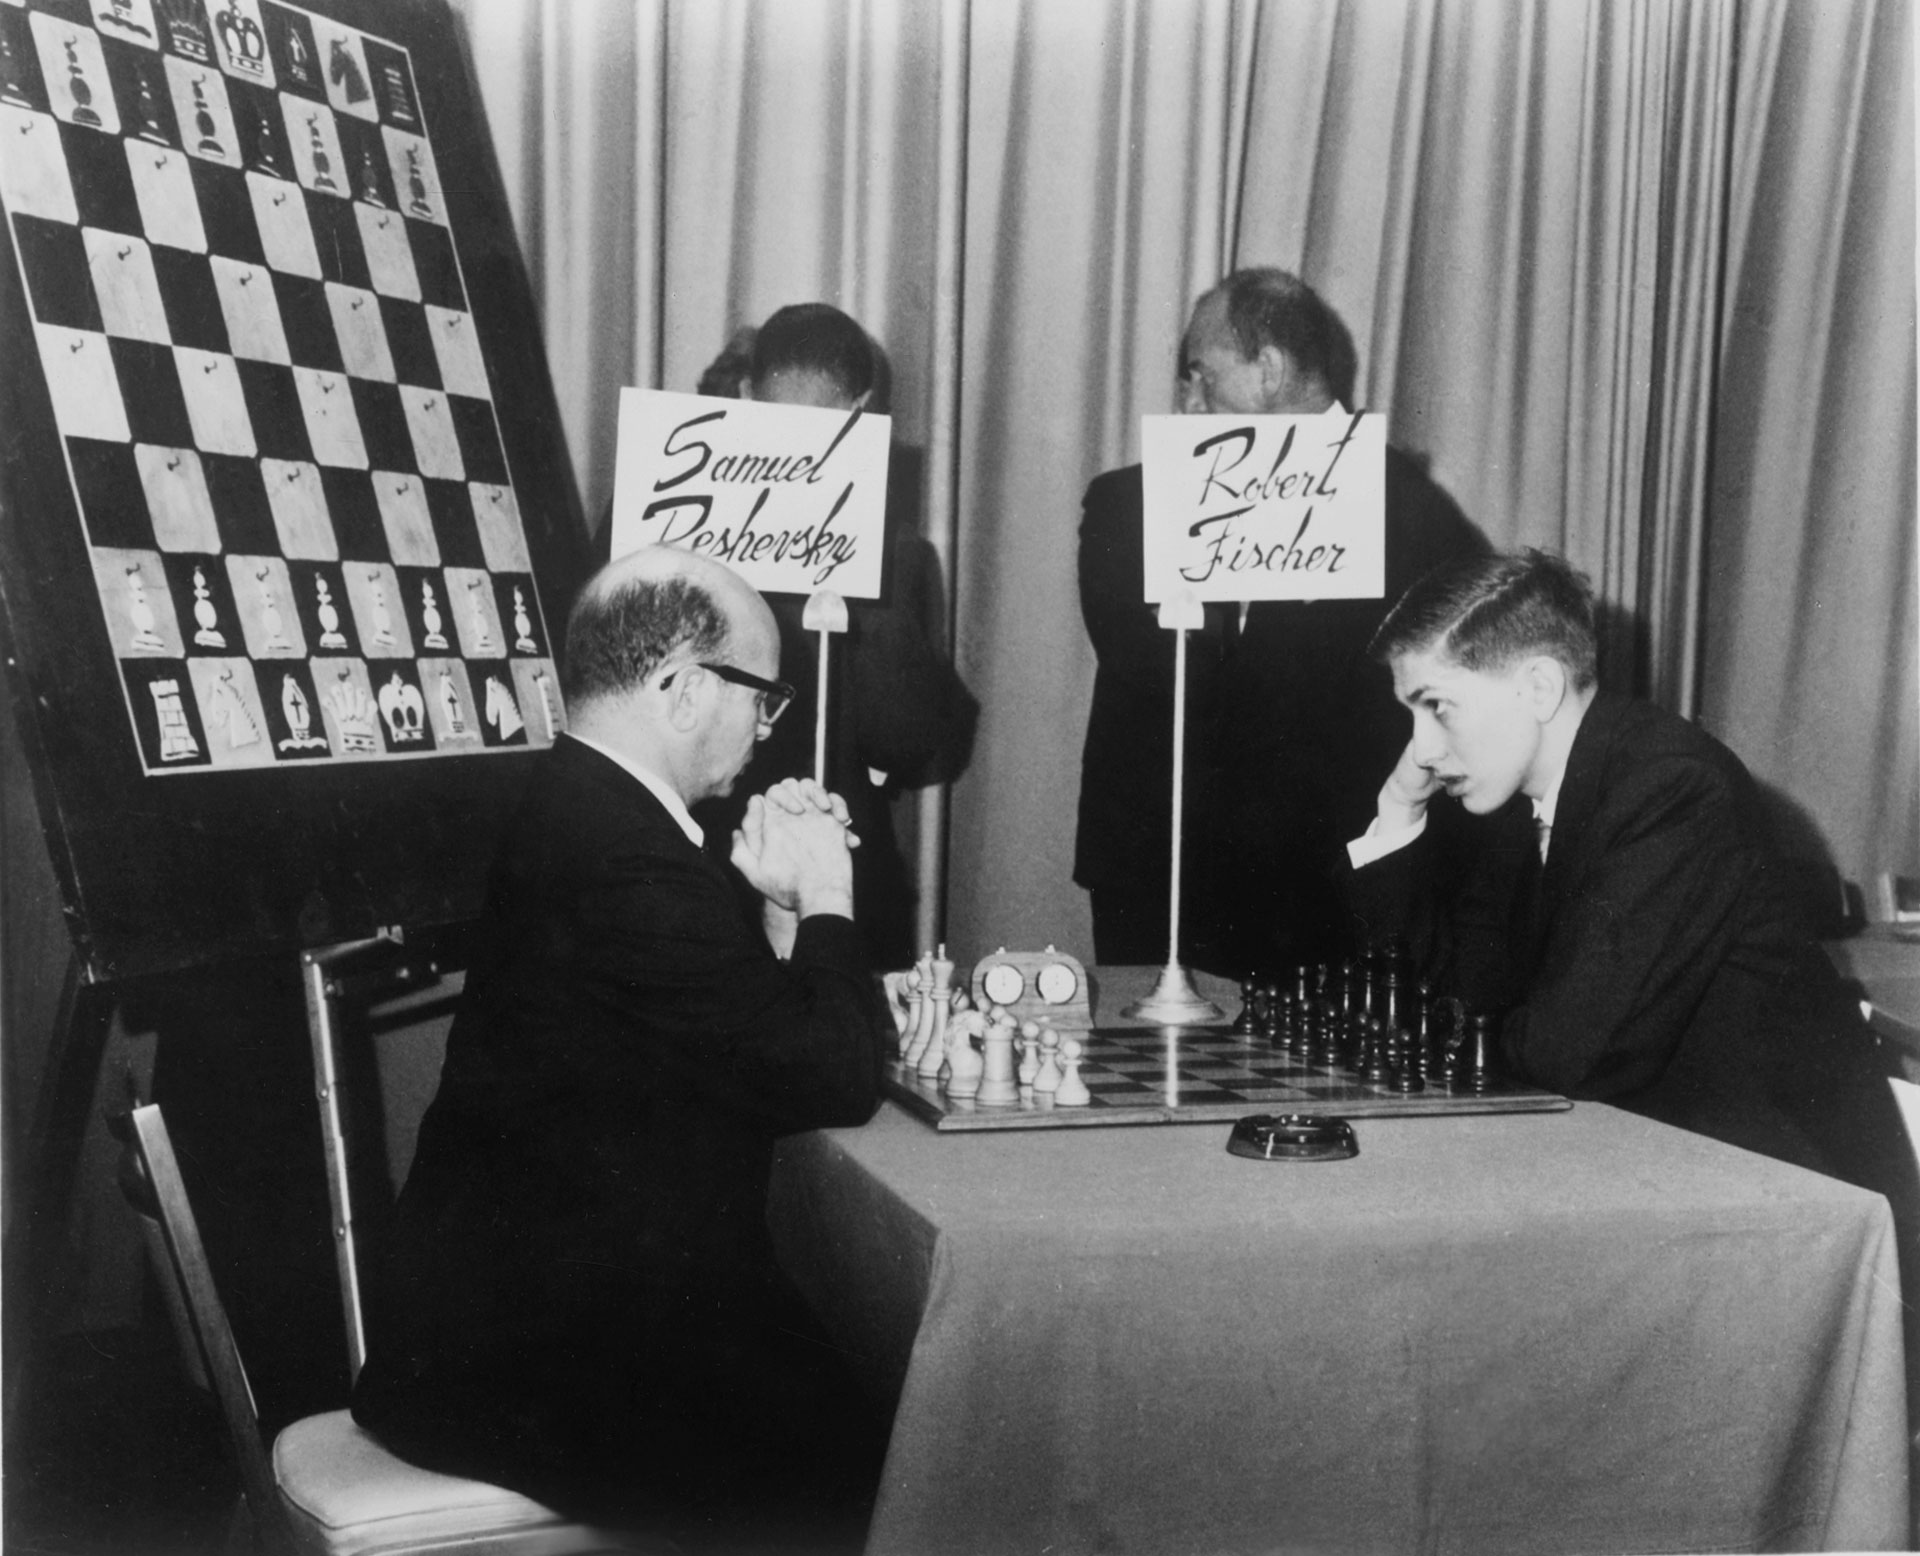 Bobby Fischer (1943-2008)